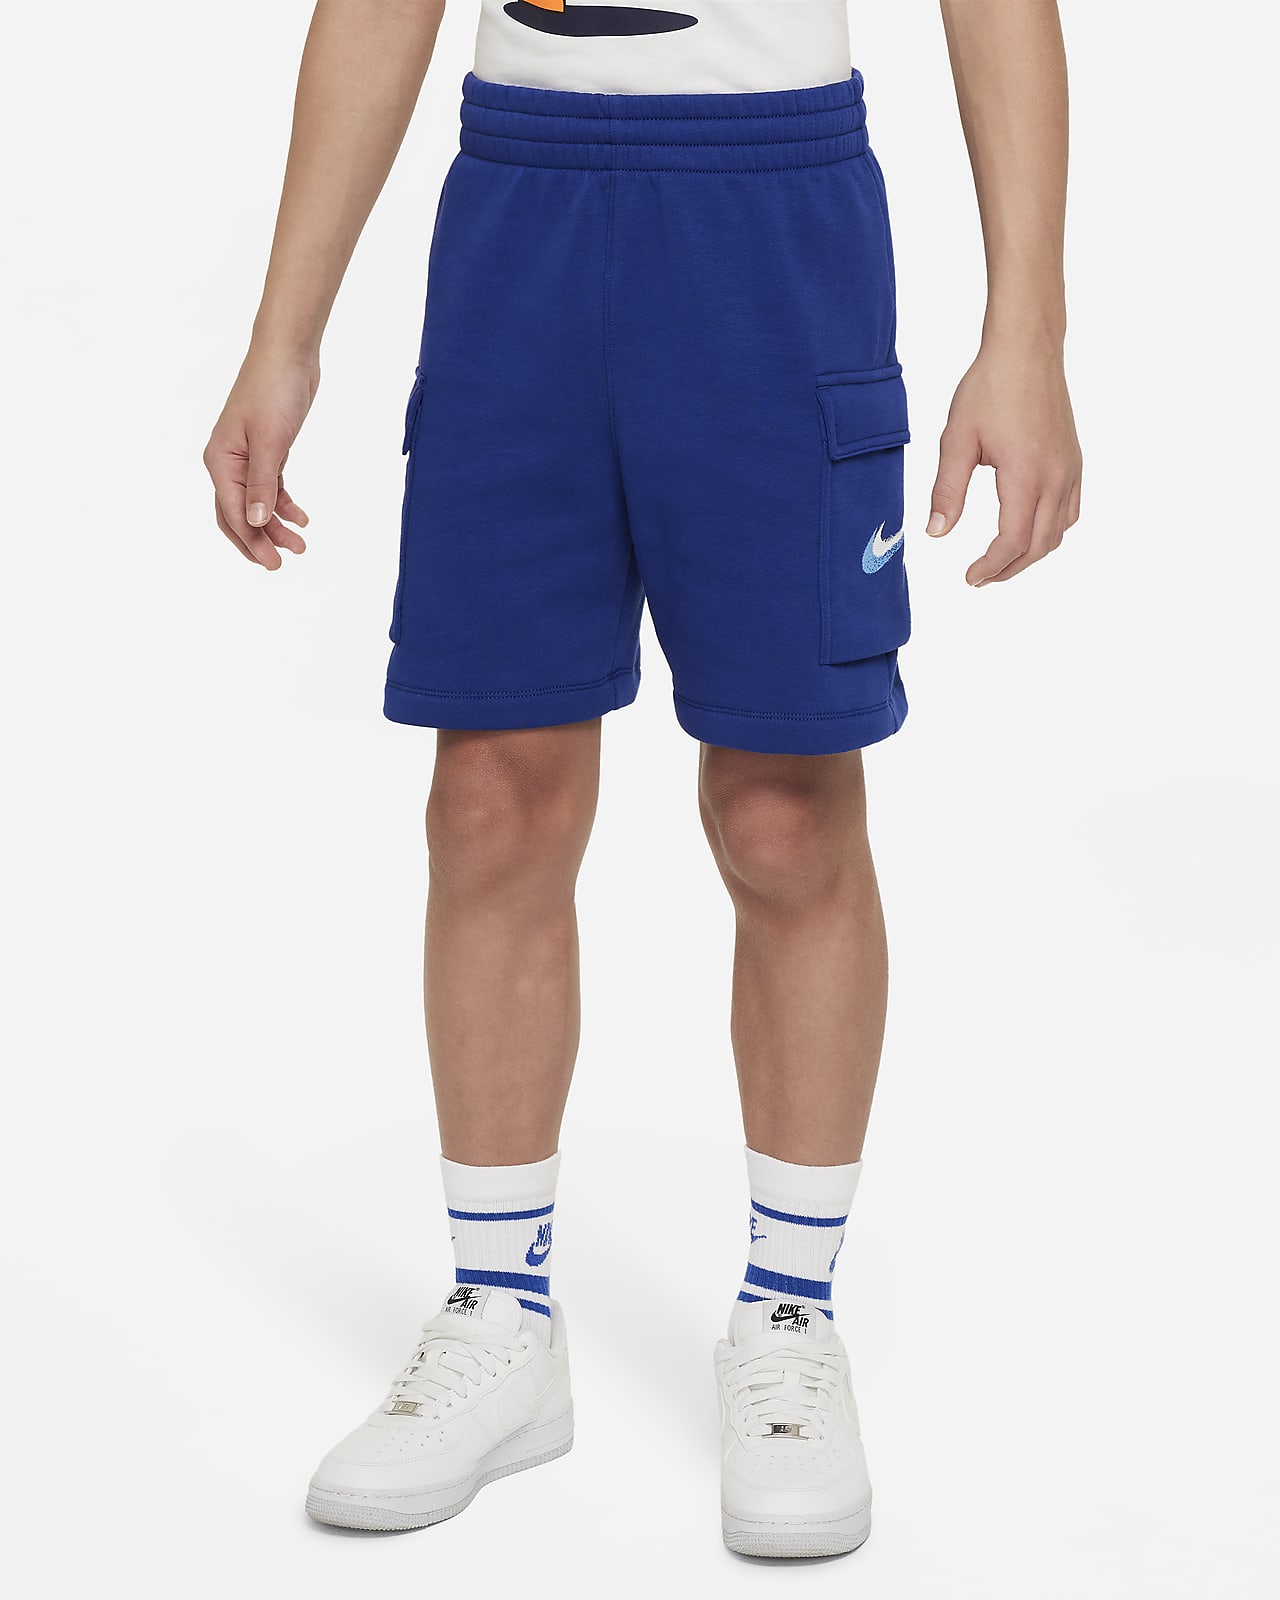 Nike Sportswear Standard Issue Pantalons curts de teixit Fleece - Nen